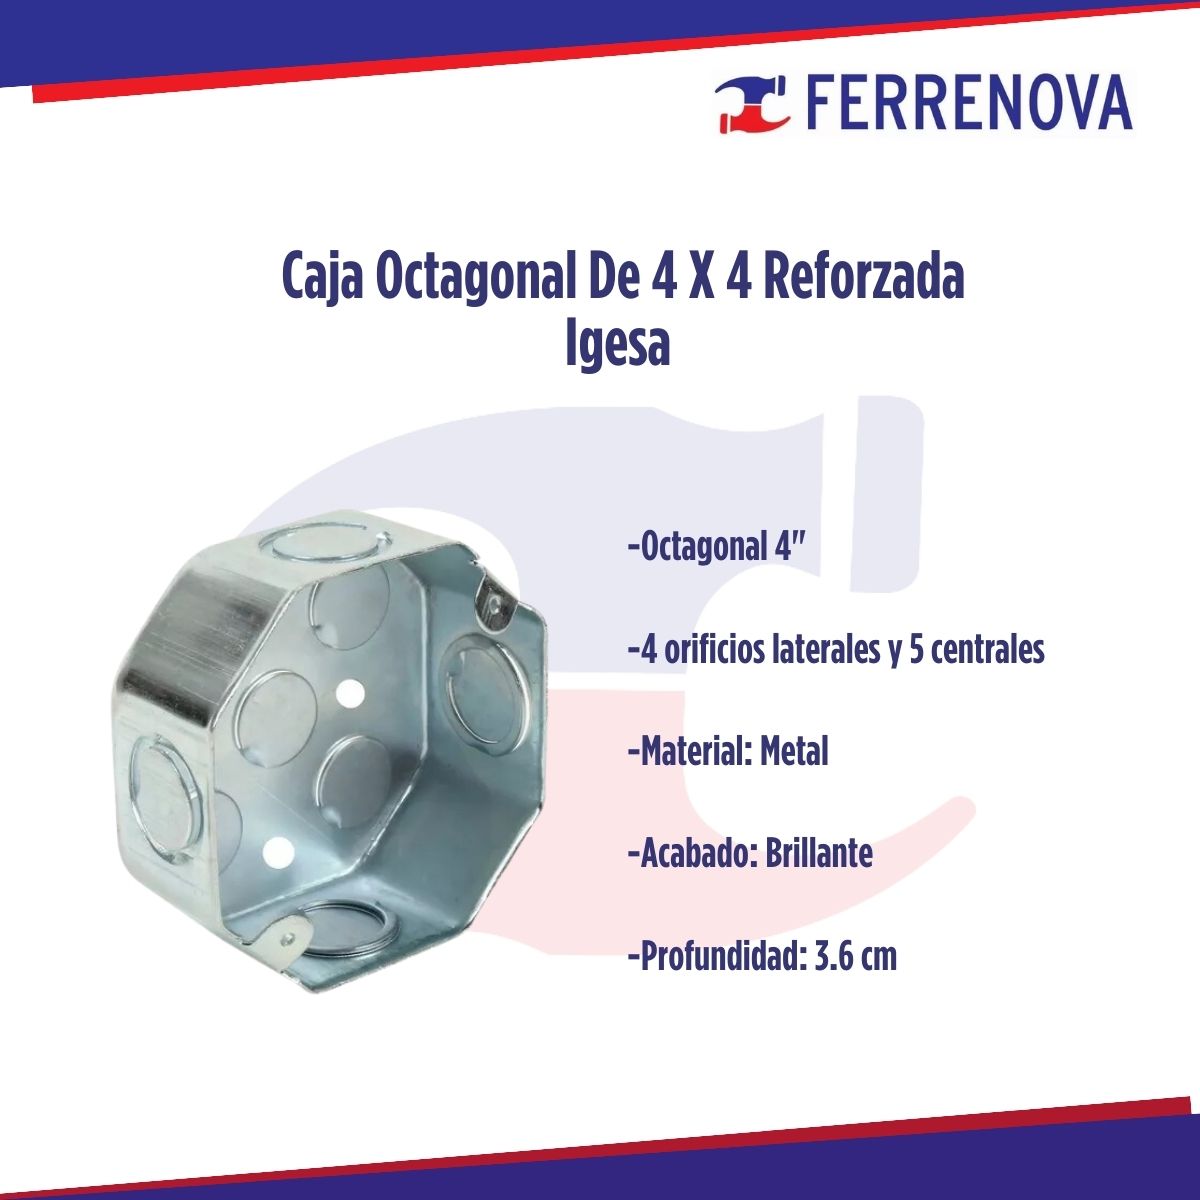 Caja Octagonal Reforzada 4x4 Igesa